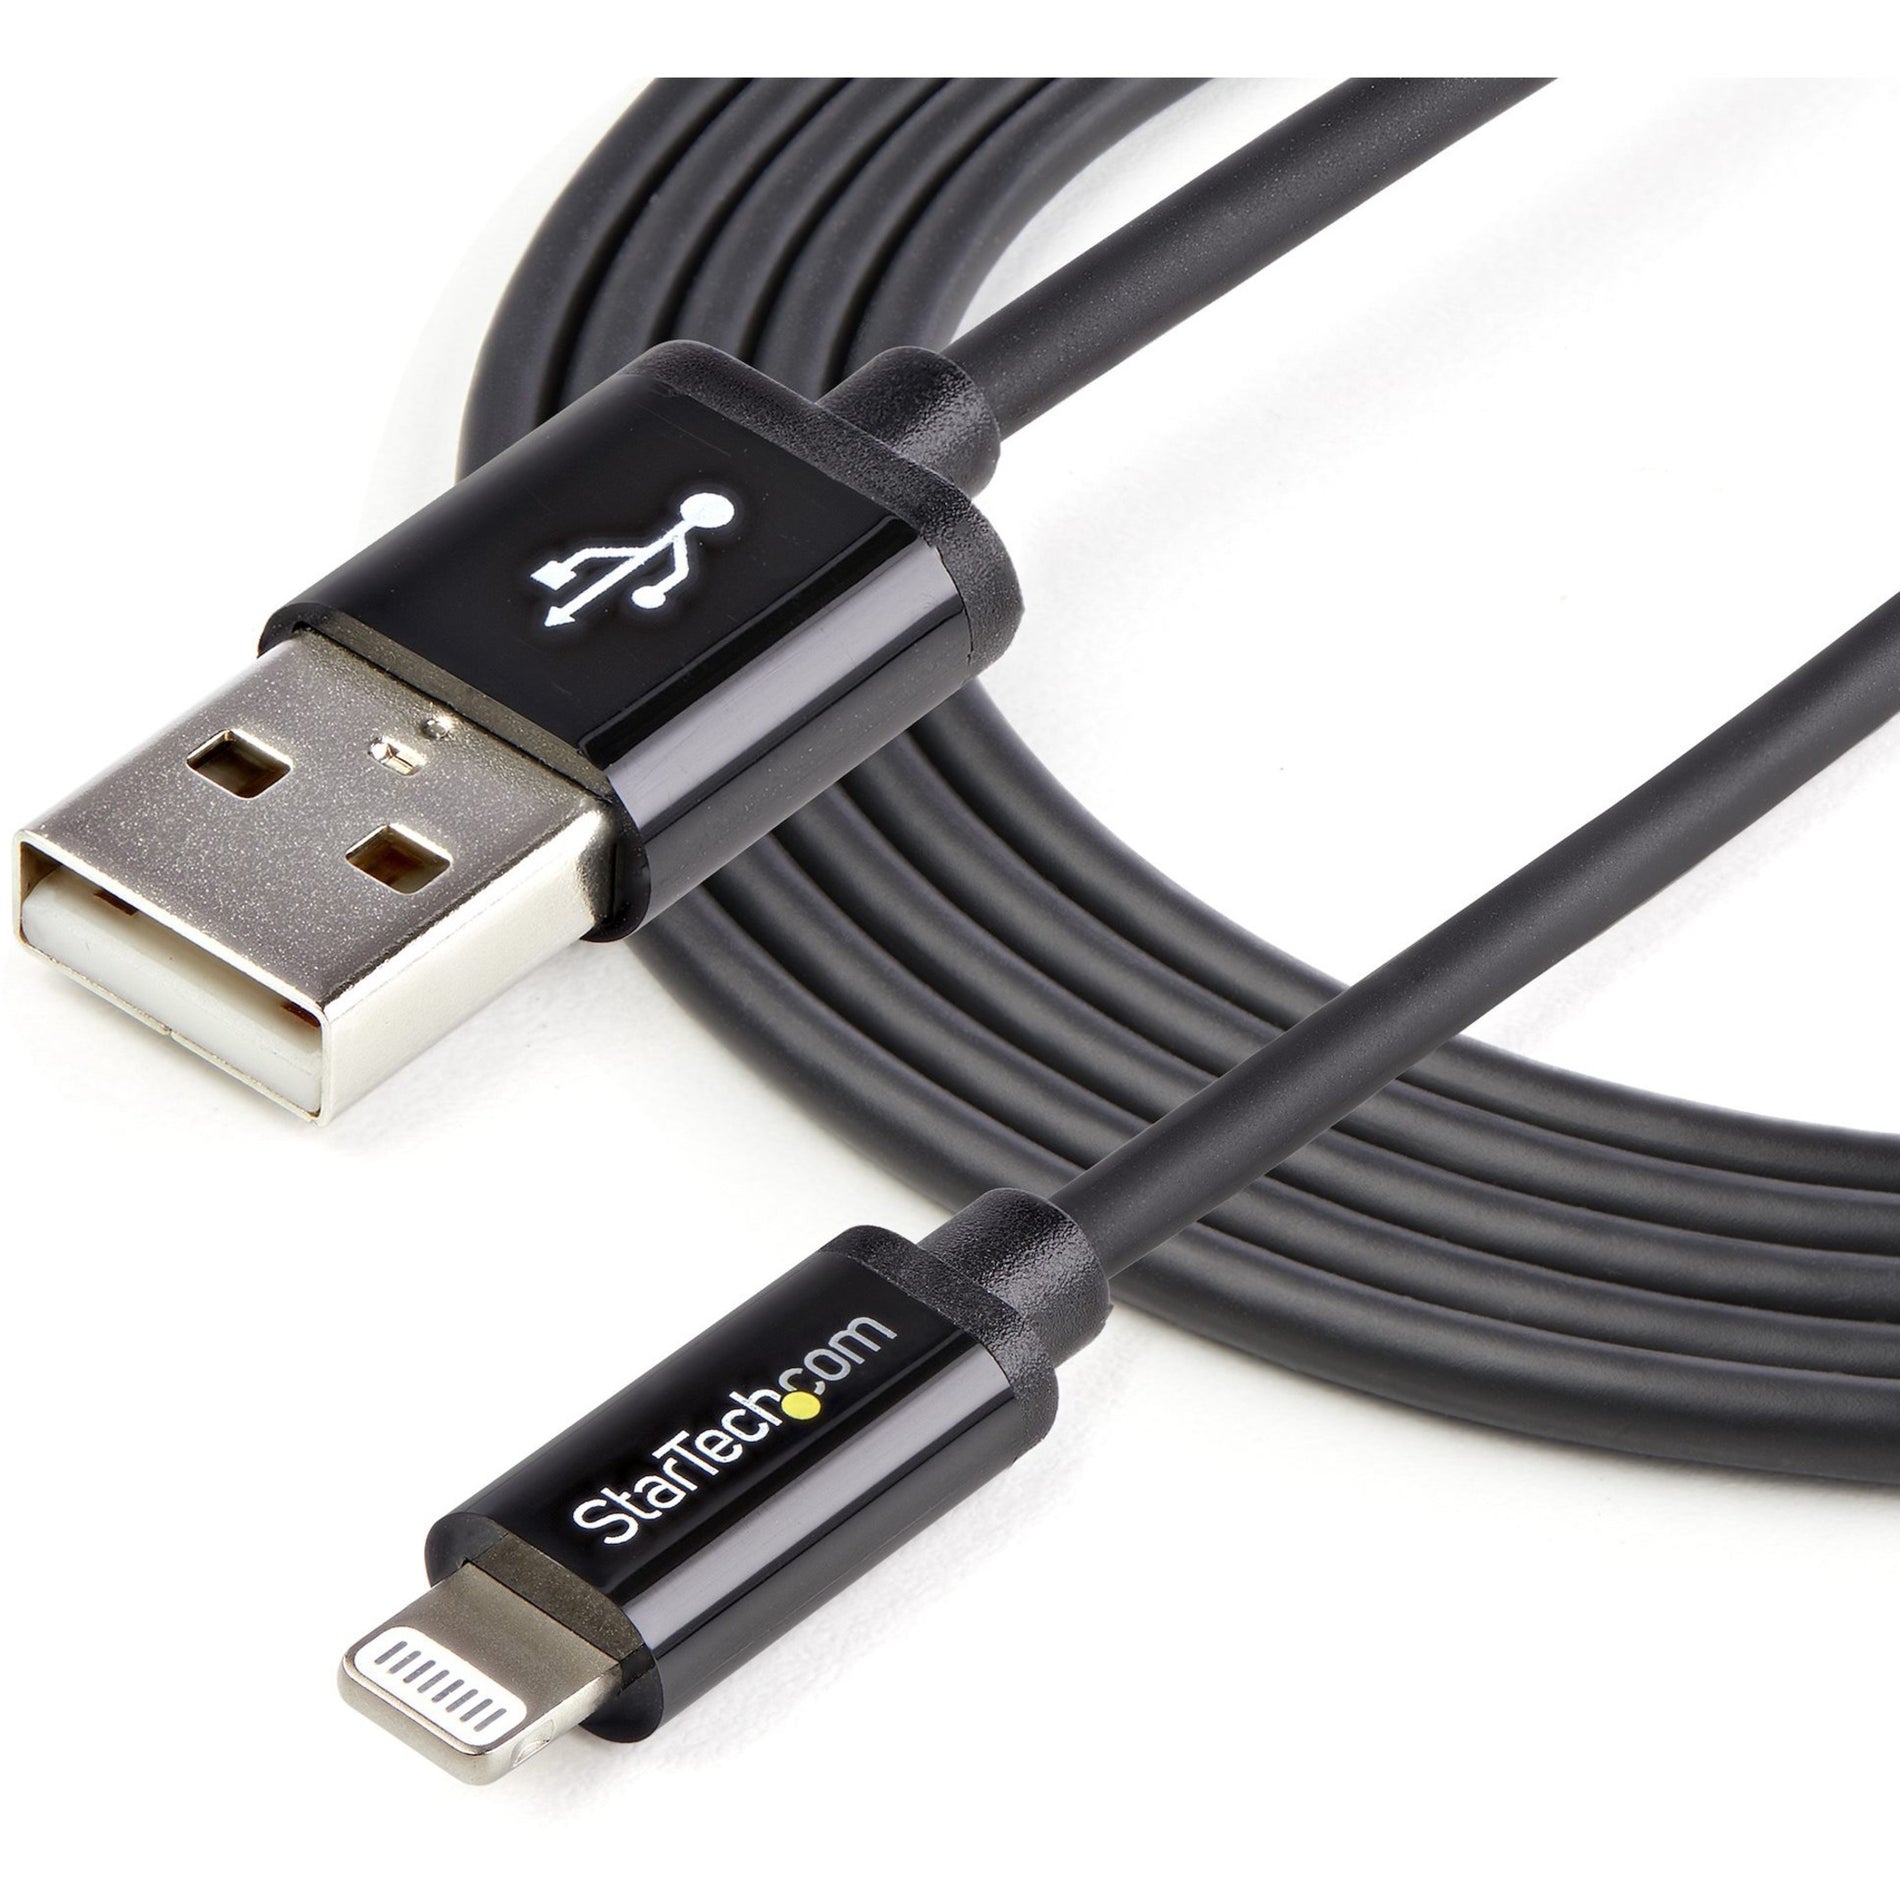 كبل نقل بيانات وشحن Lightning/USB USBLT2MB من StarTech.com، بطول 6 أقدام، أسود